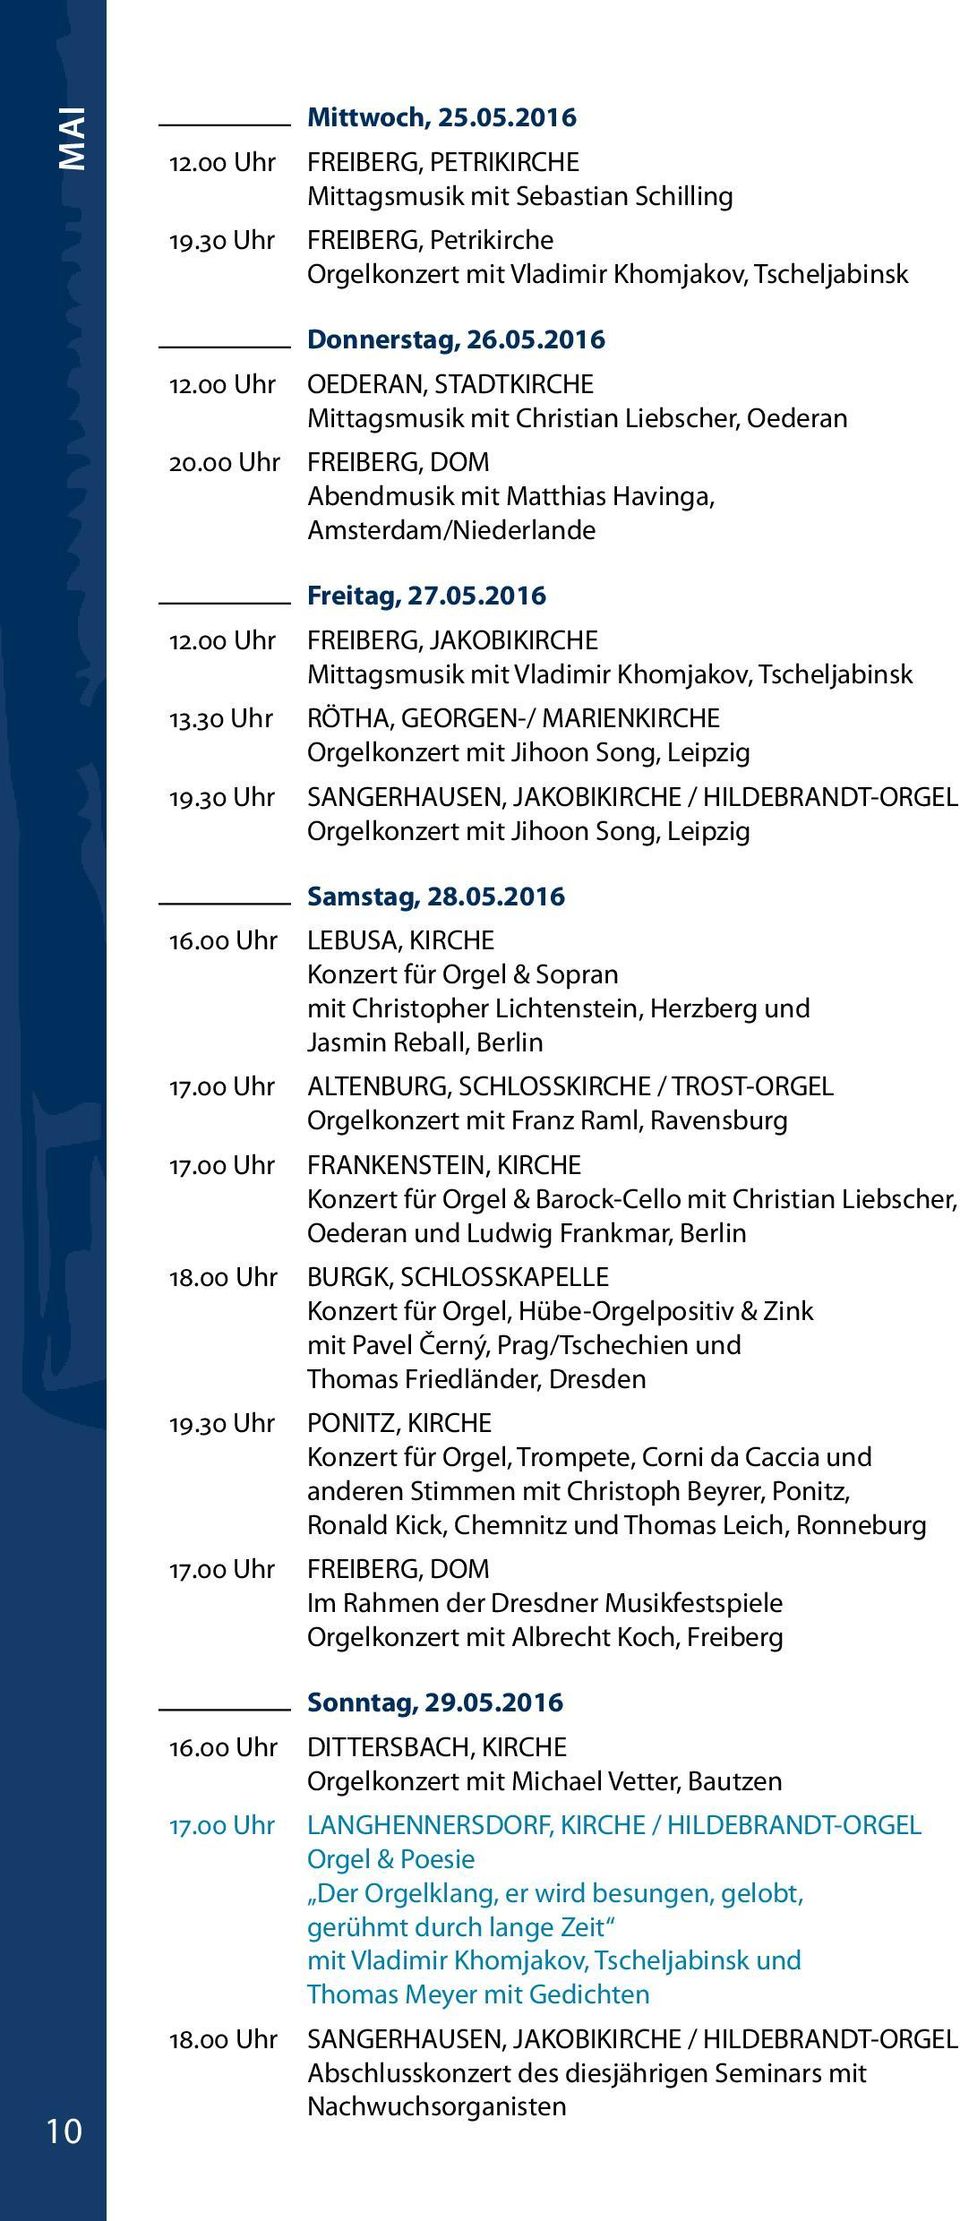 00 Uhr FREIBERG, JAKOBIKIRCHE Mittagsmusik mit Vladimir Khomjakov, Tscheljabinsk 13.30 Uhr RÖTHA, GEORGEN-/ MARIENKIRCHE Orgelkonzert mit Jihoon Song, Leipzig 19.